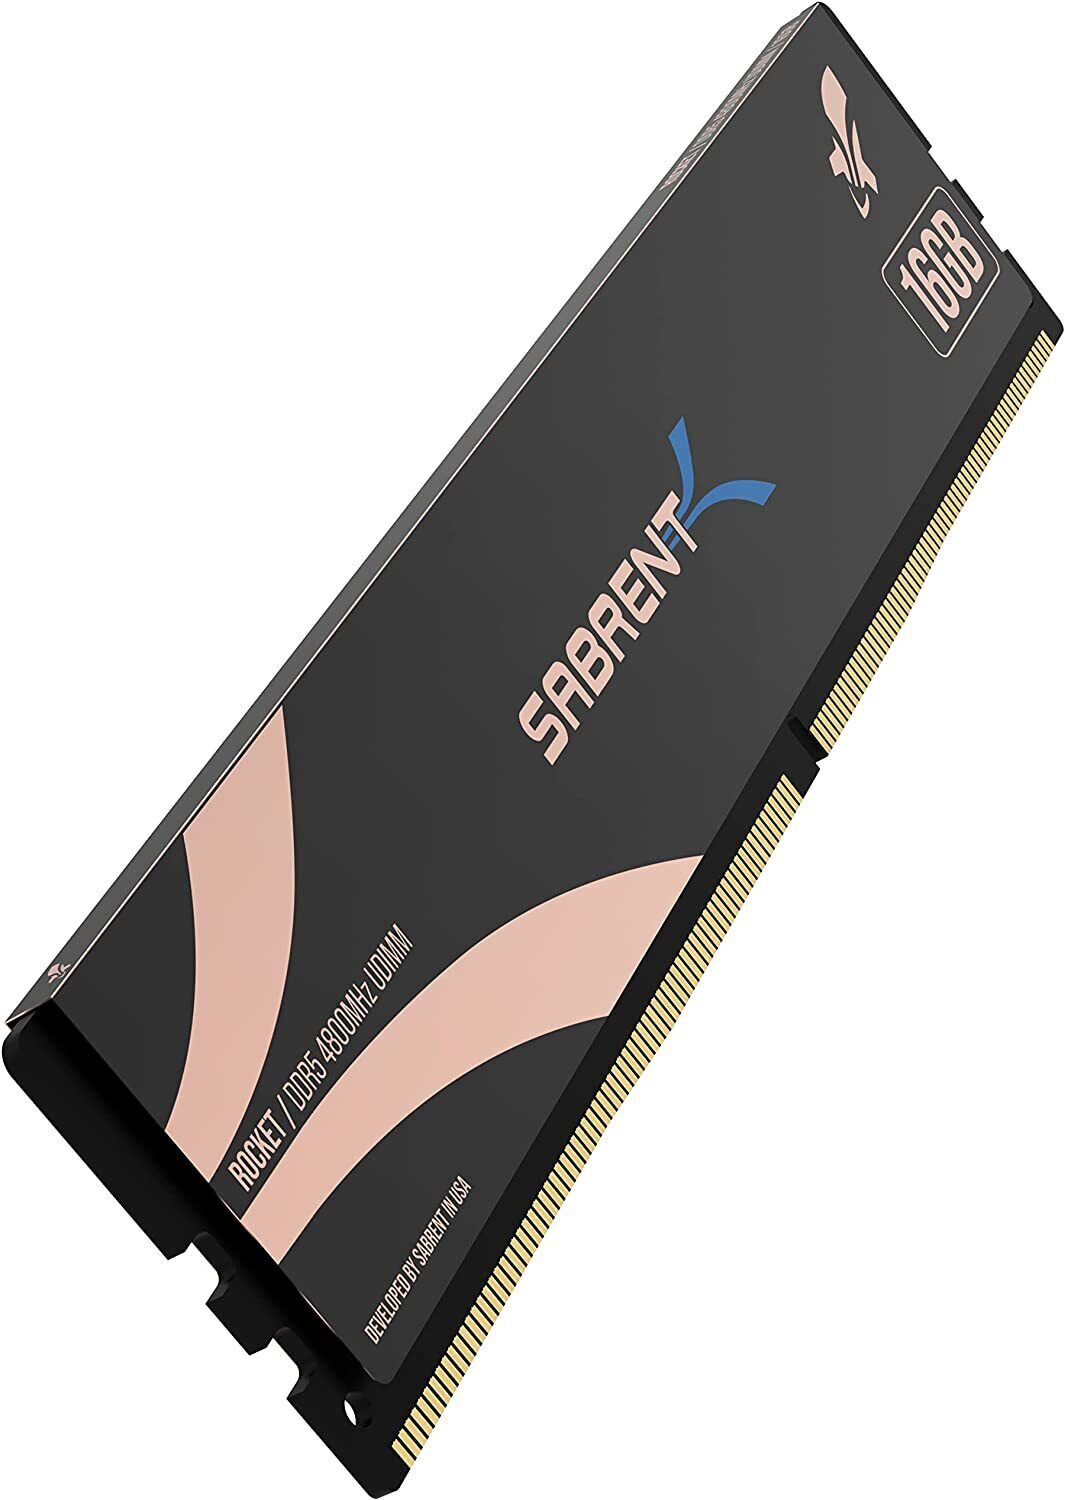 New - SABRENT Rocket DDR5 16GB U-DIMM 4800MHz Memory for Desktops (SB-DR5U-16G)